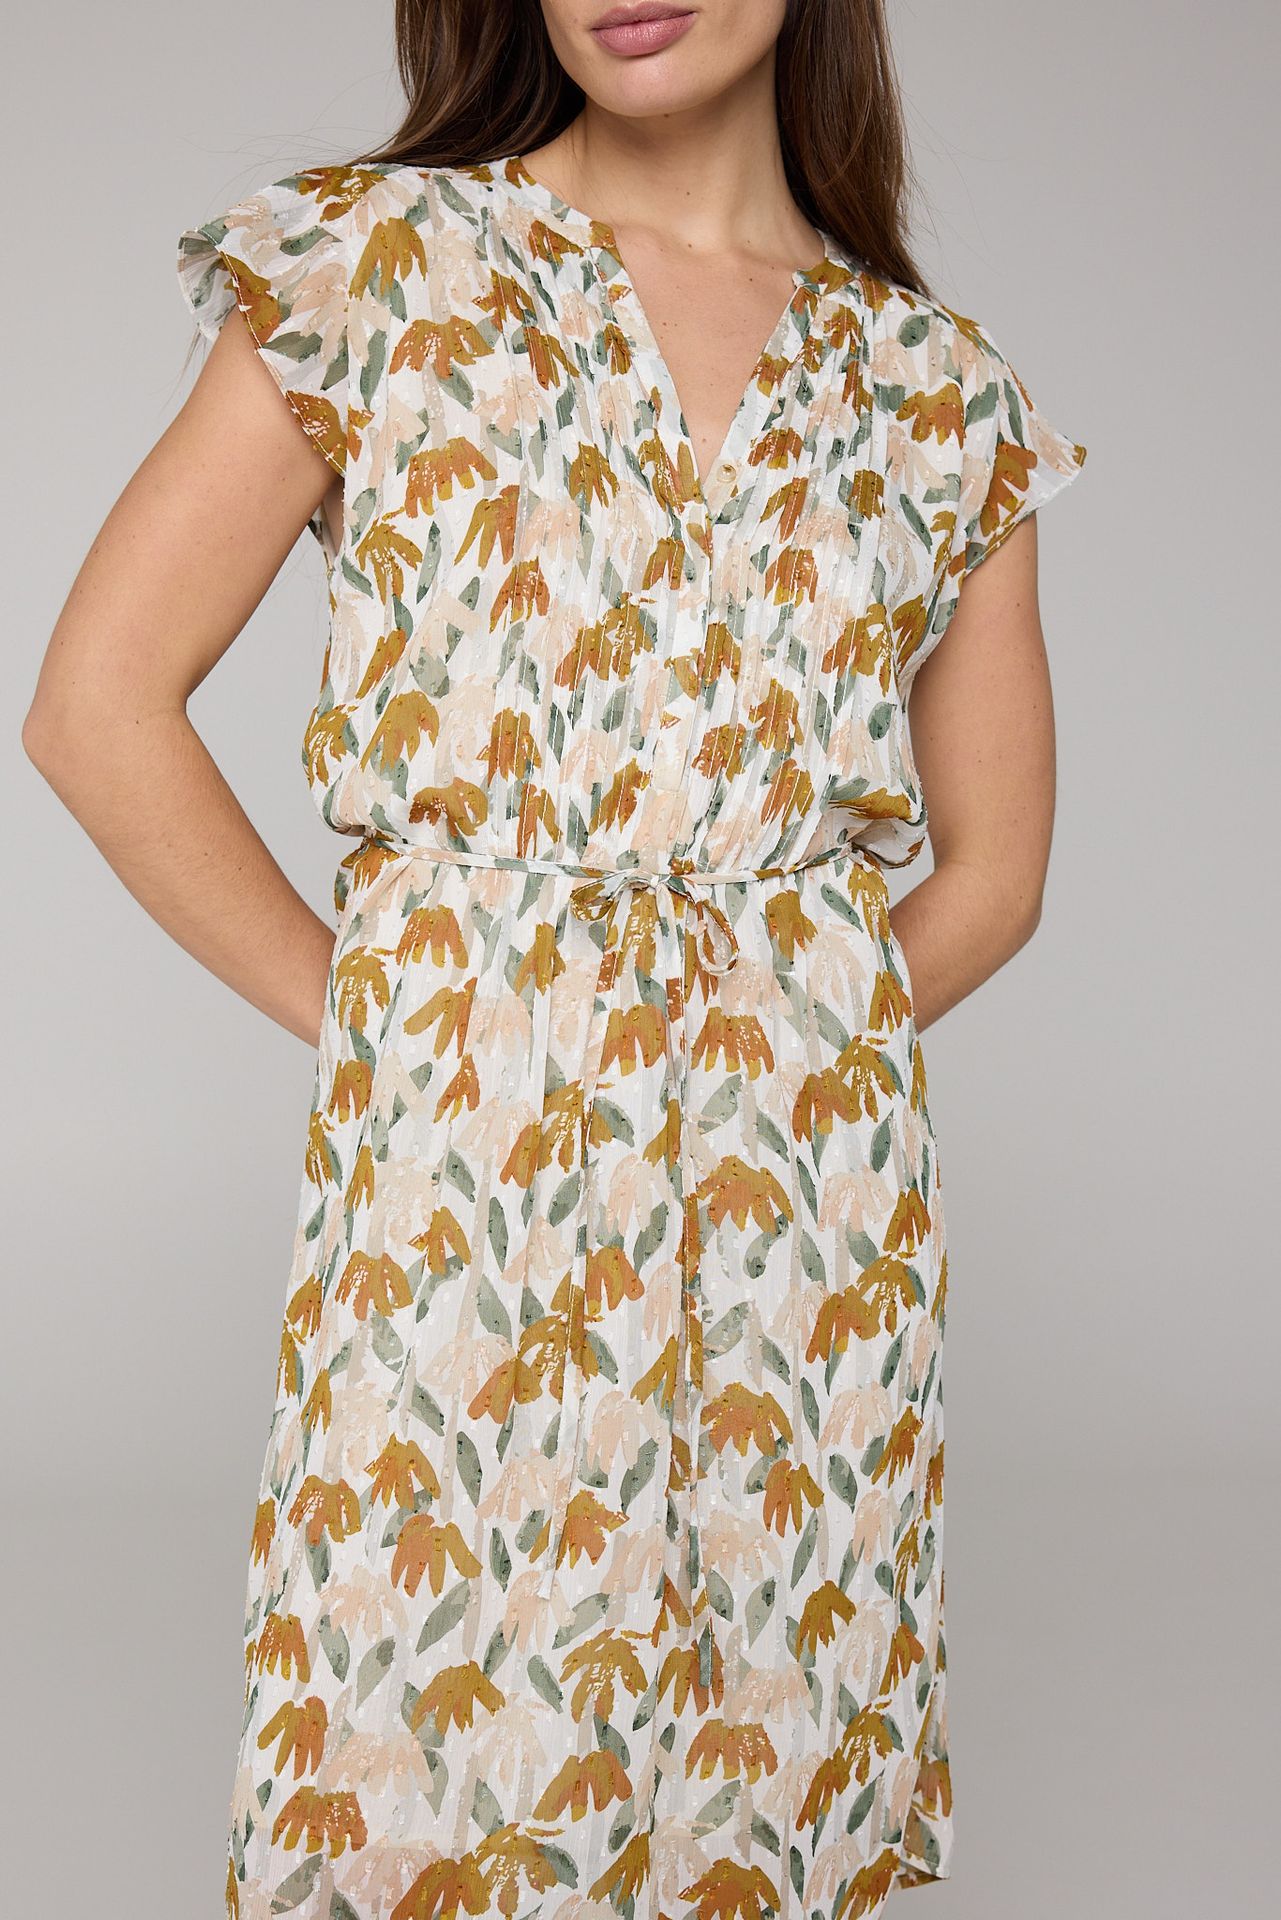 Norah Midi jurk botanisch multicolor 213980-002